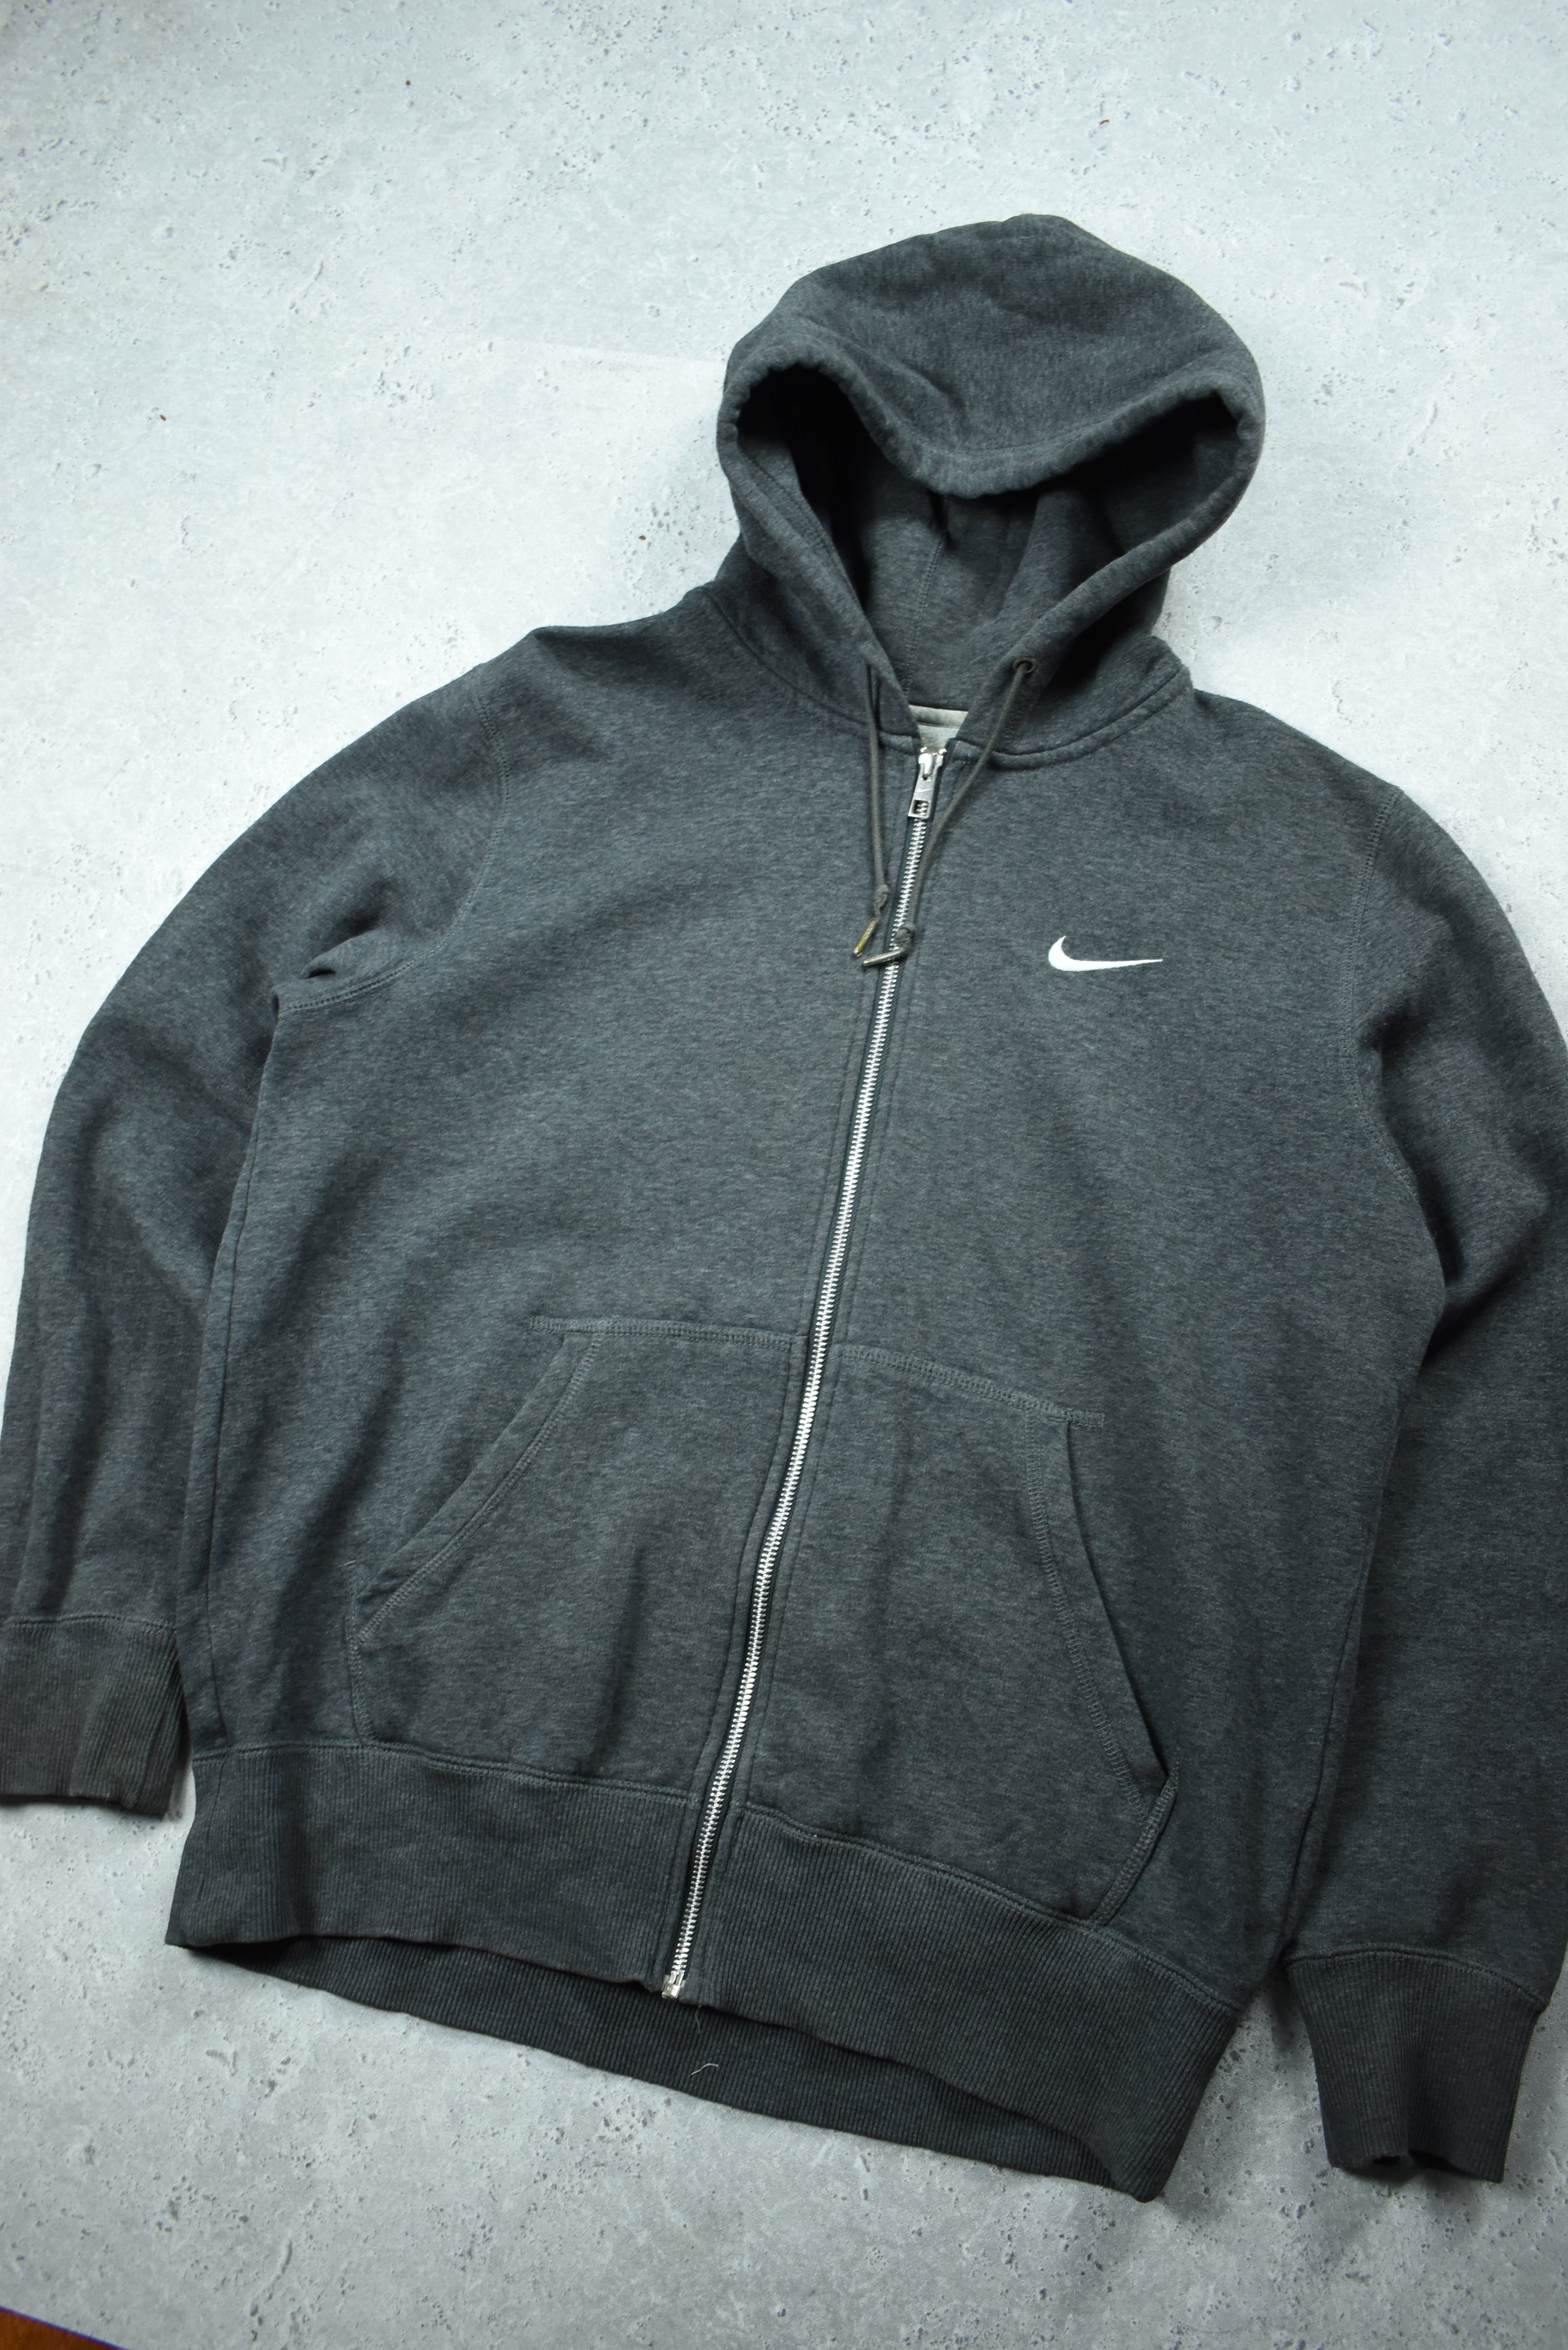 Vintage Nike Embroidery Swoosh Full Zip Hoodie Large